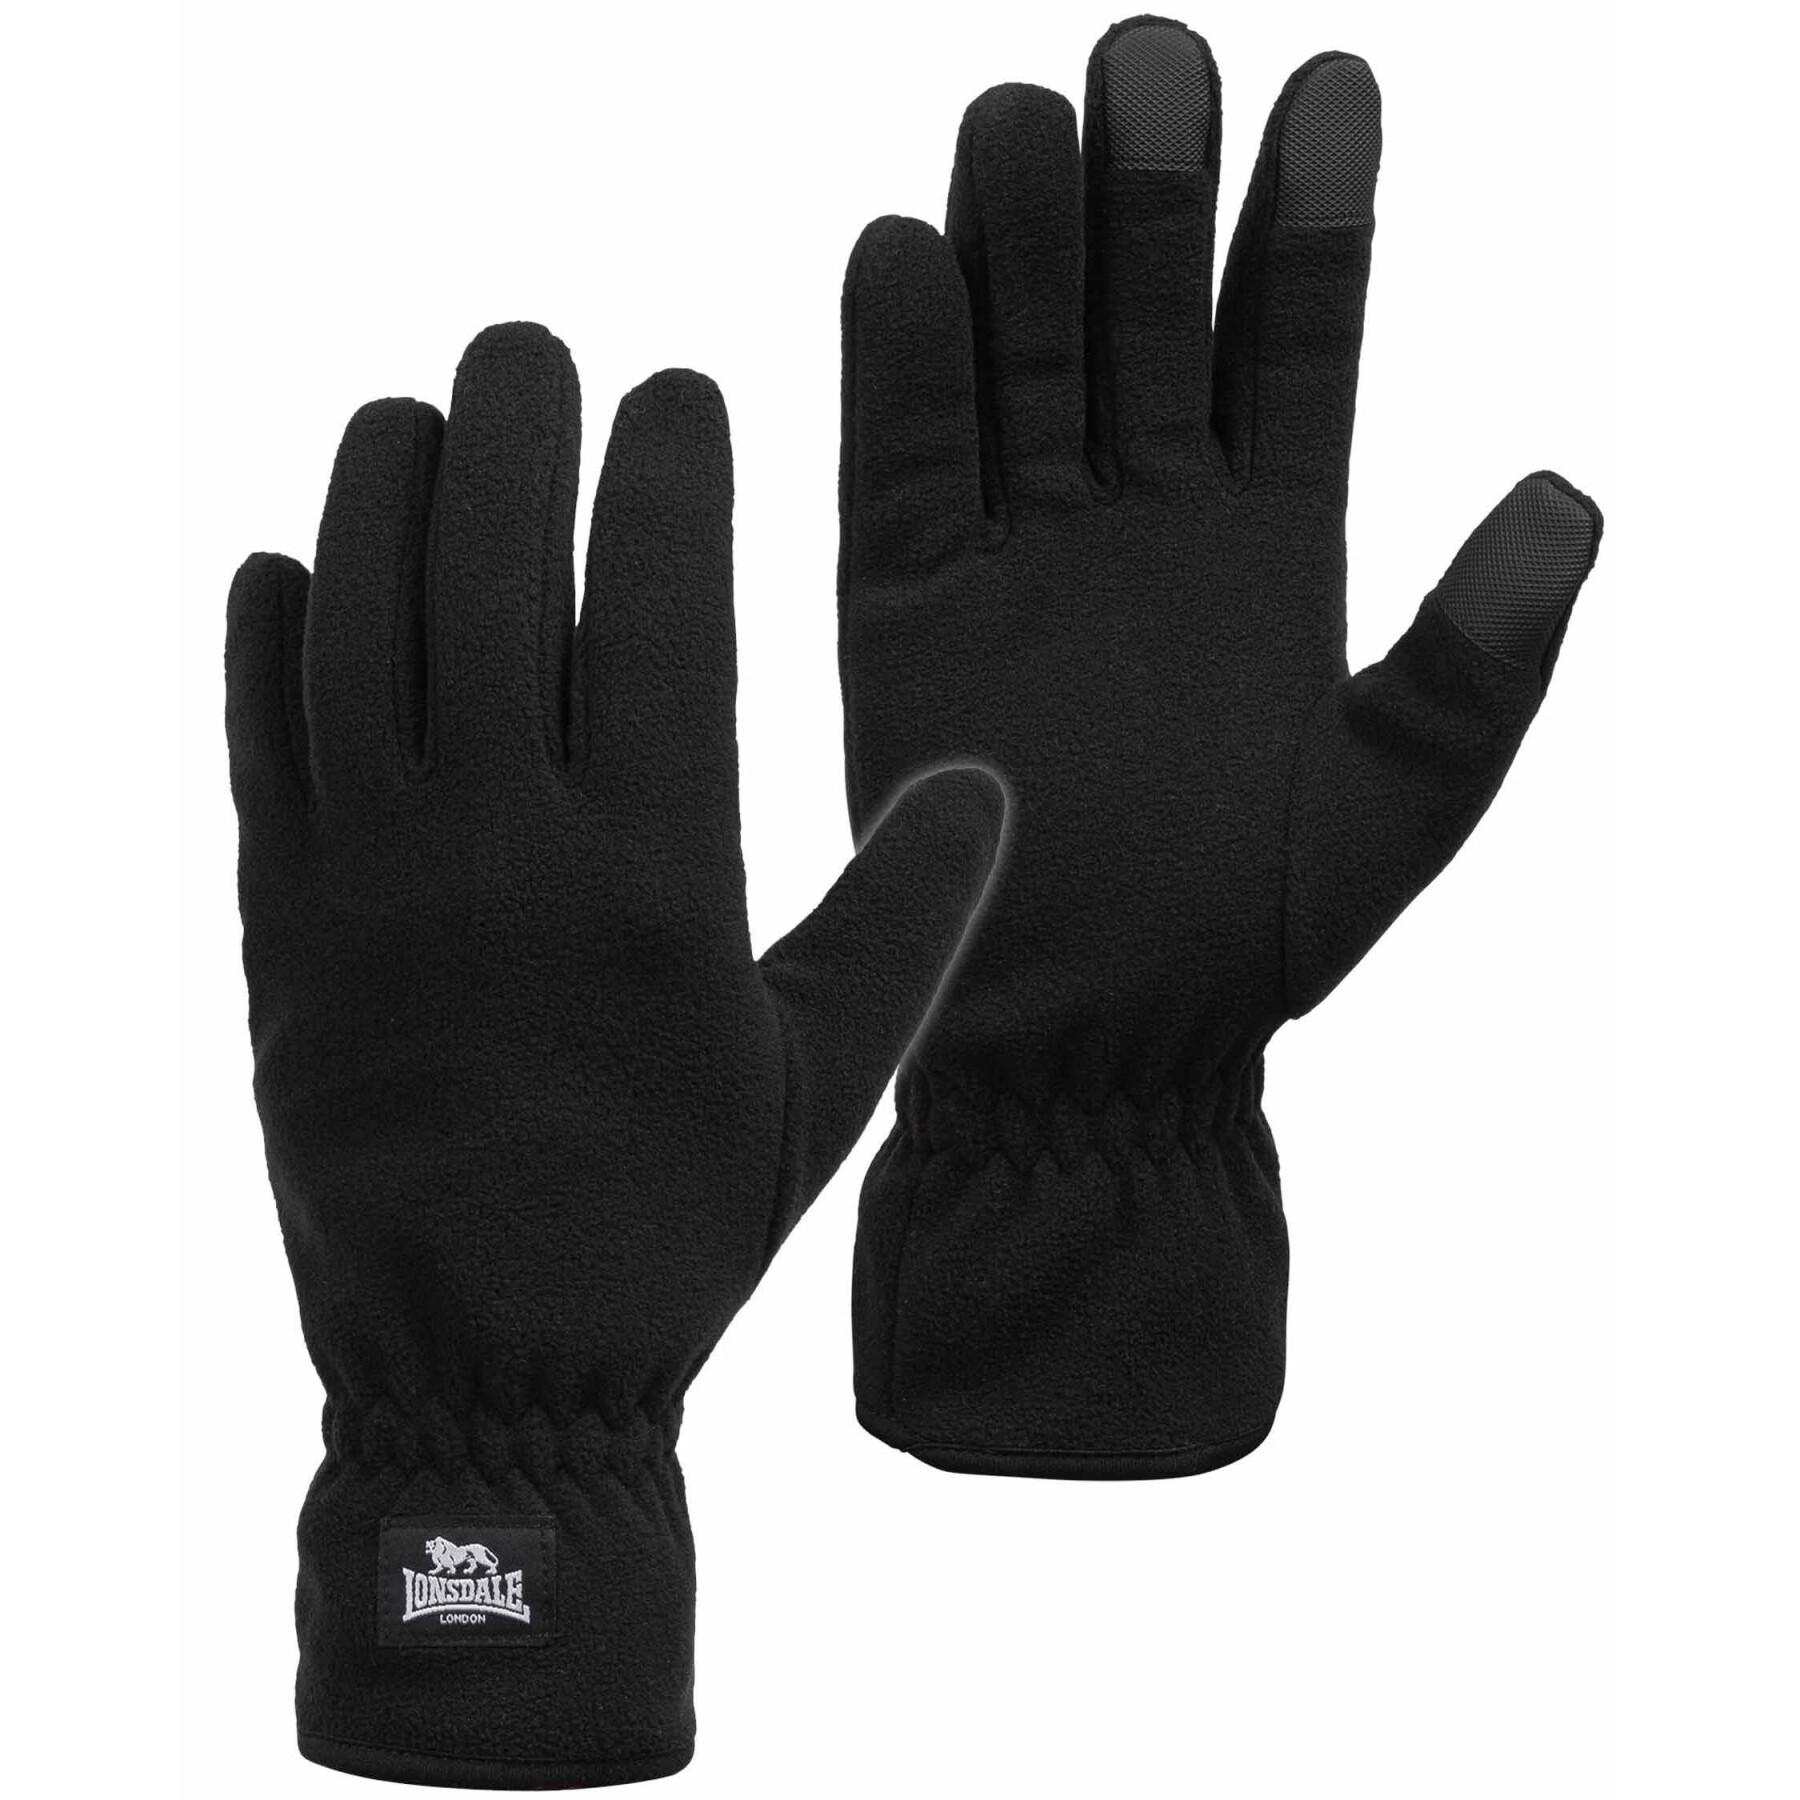 Handschuhe Lonsdale Ayside - Schals & Handschuhe - Mode-Accessoires -  Accessoires